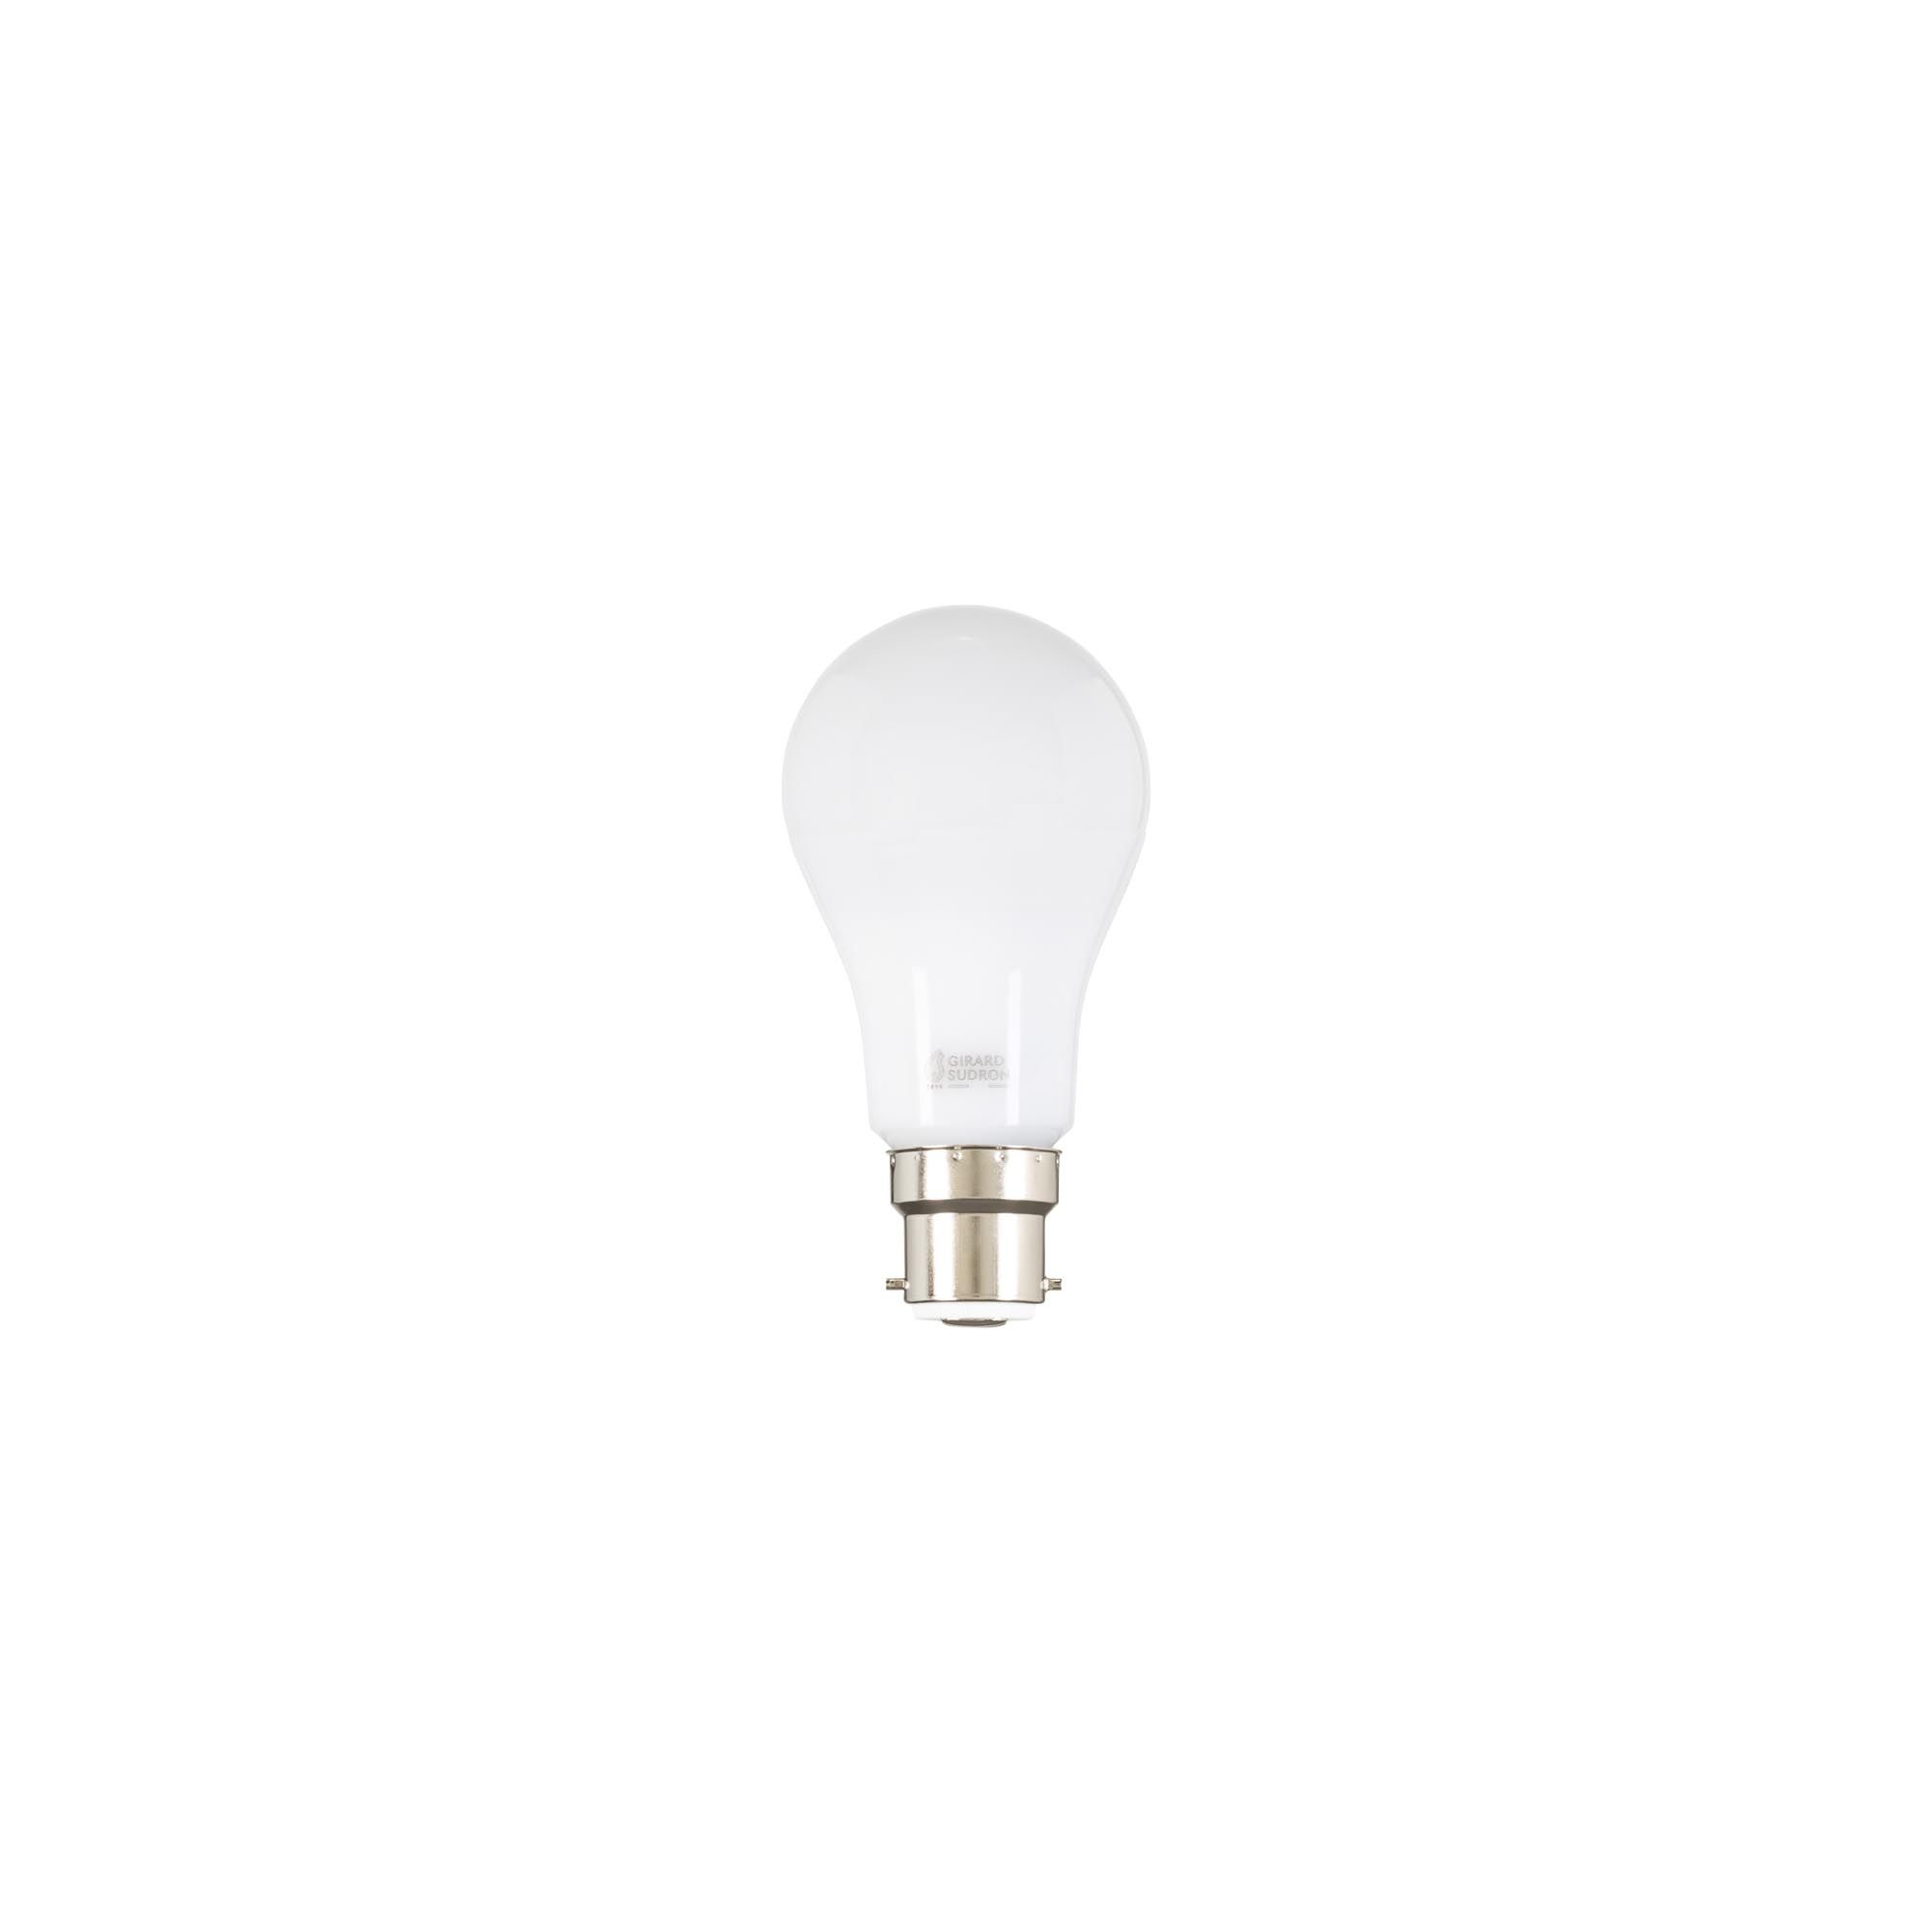 Ampoule LED, Standard A65 B22, blanc, Ø6,5cm, H12,3cm - Girard Sudron -  Luminaires Nedgis